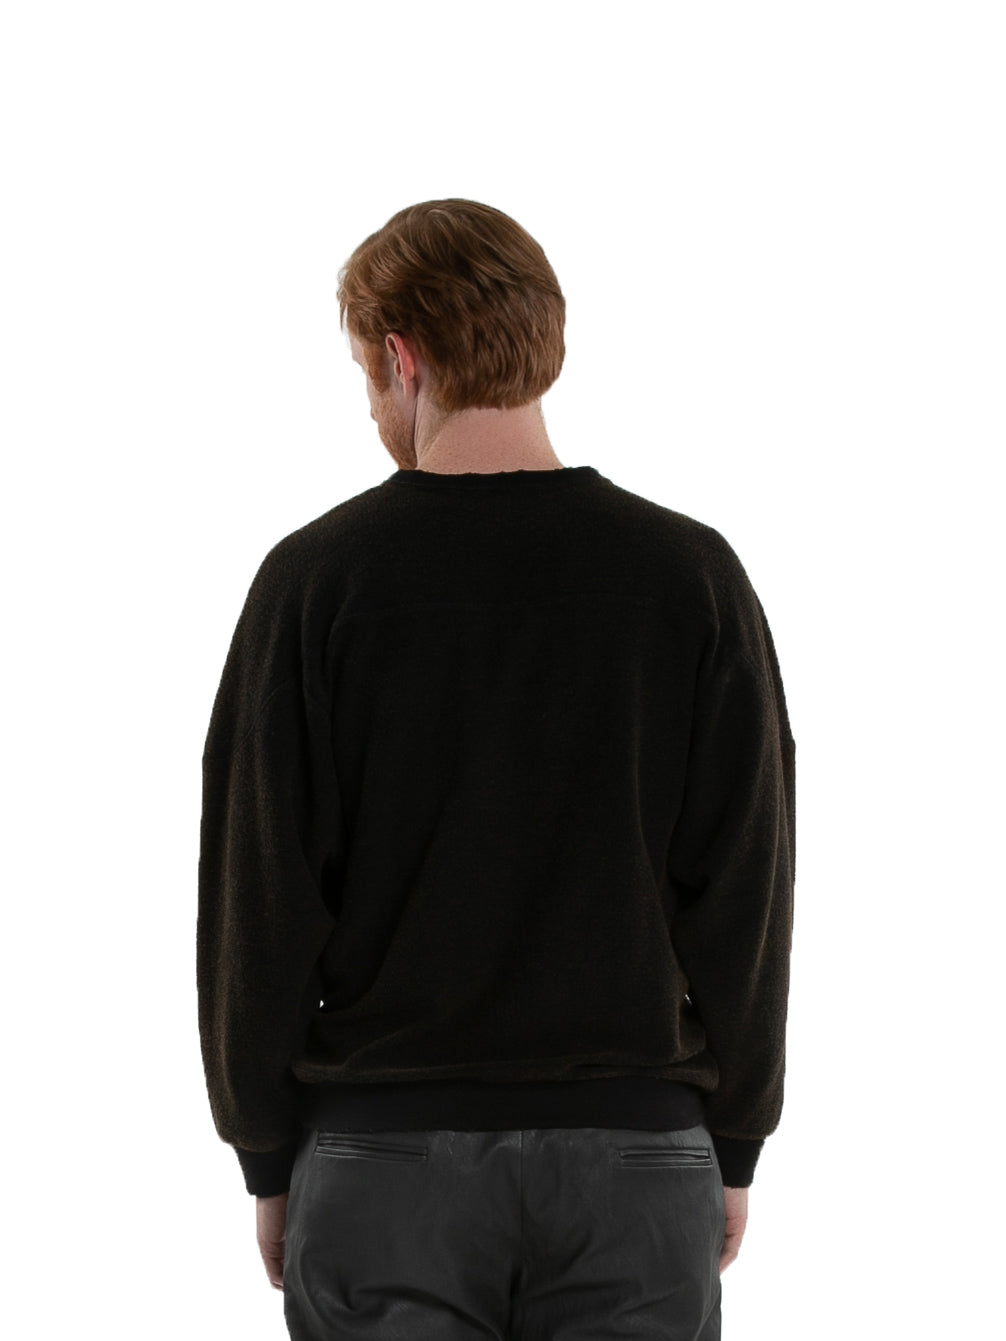 Backside of male model wearing Heavy Crew Sweat in Black